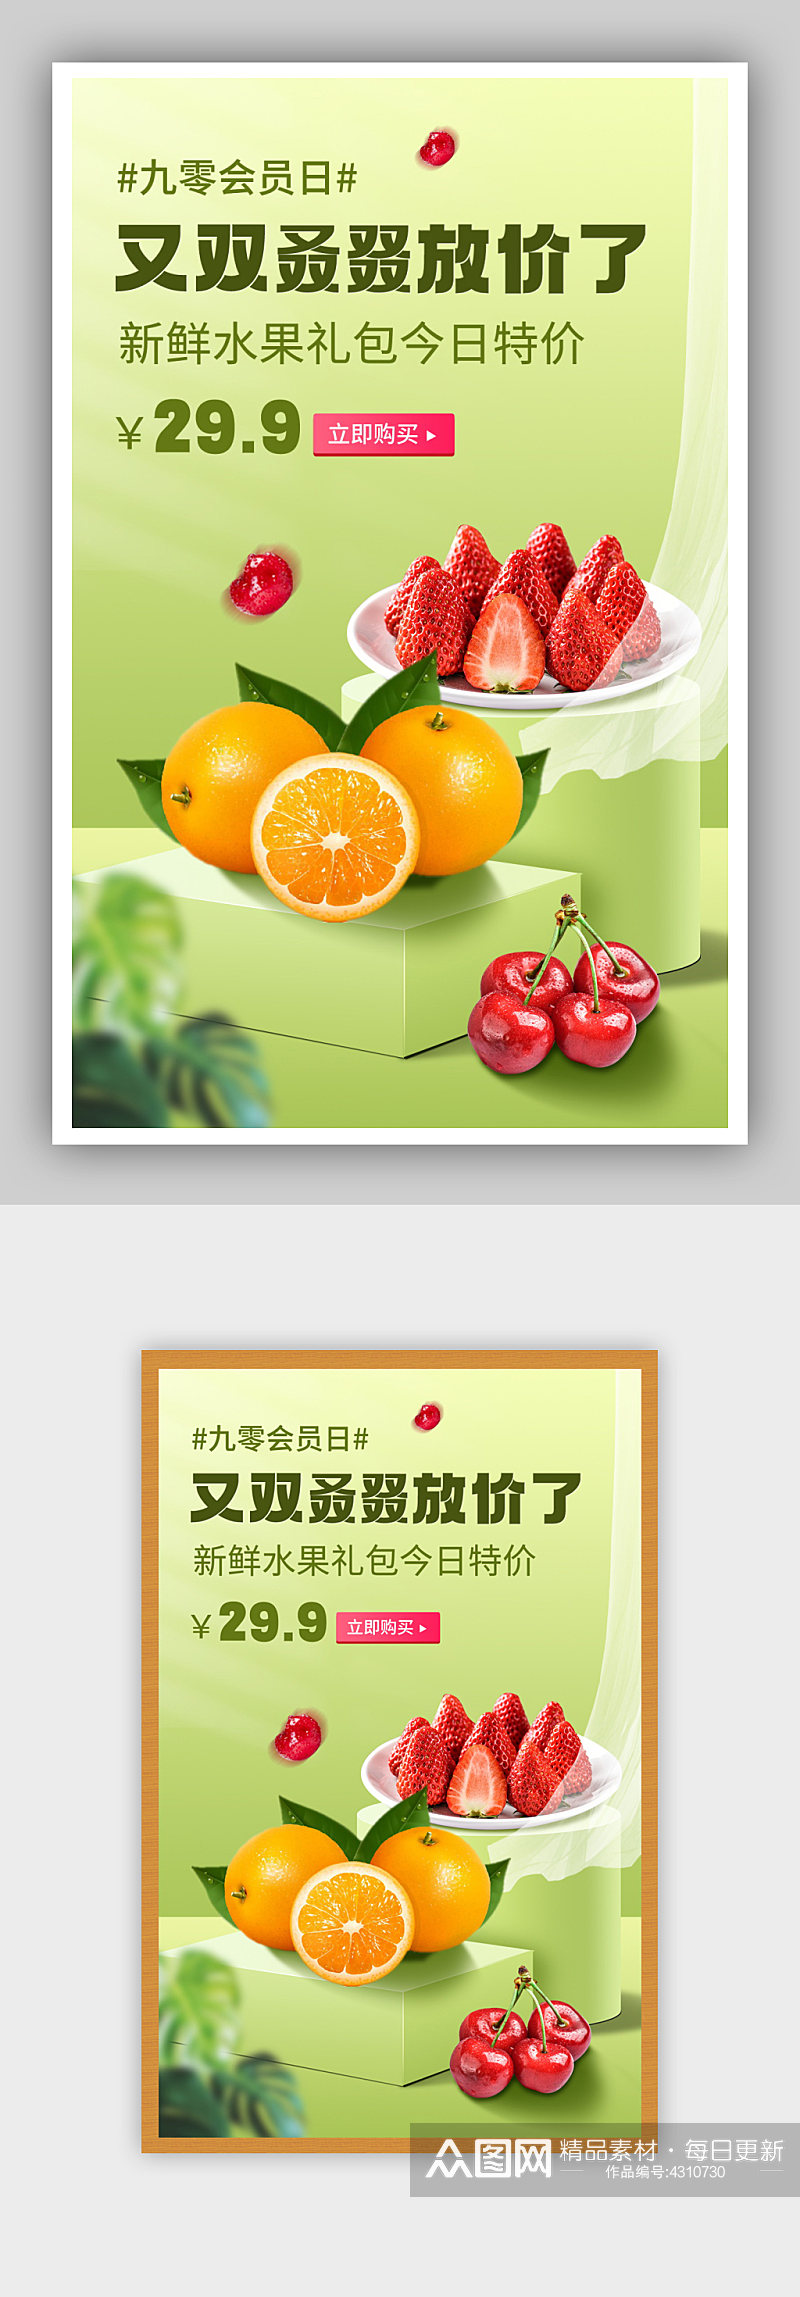 绿色水果外卖礼包促销橙子草莓樱桃海报素材